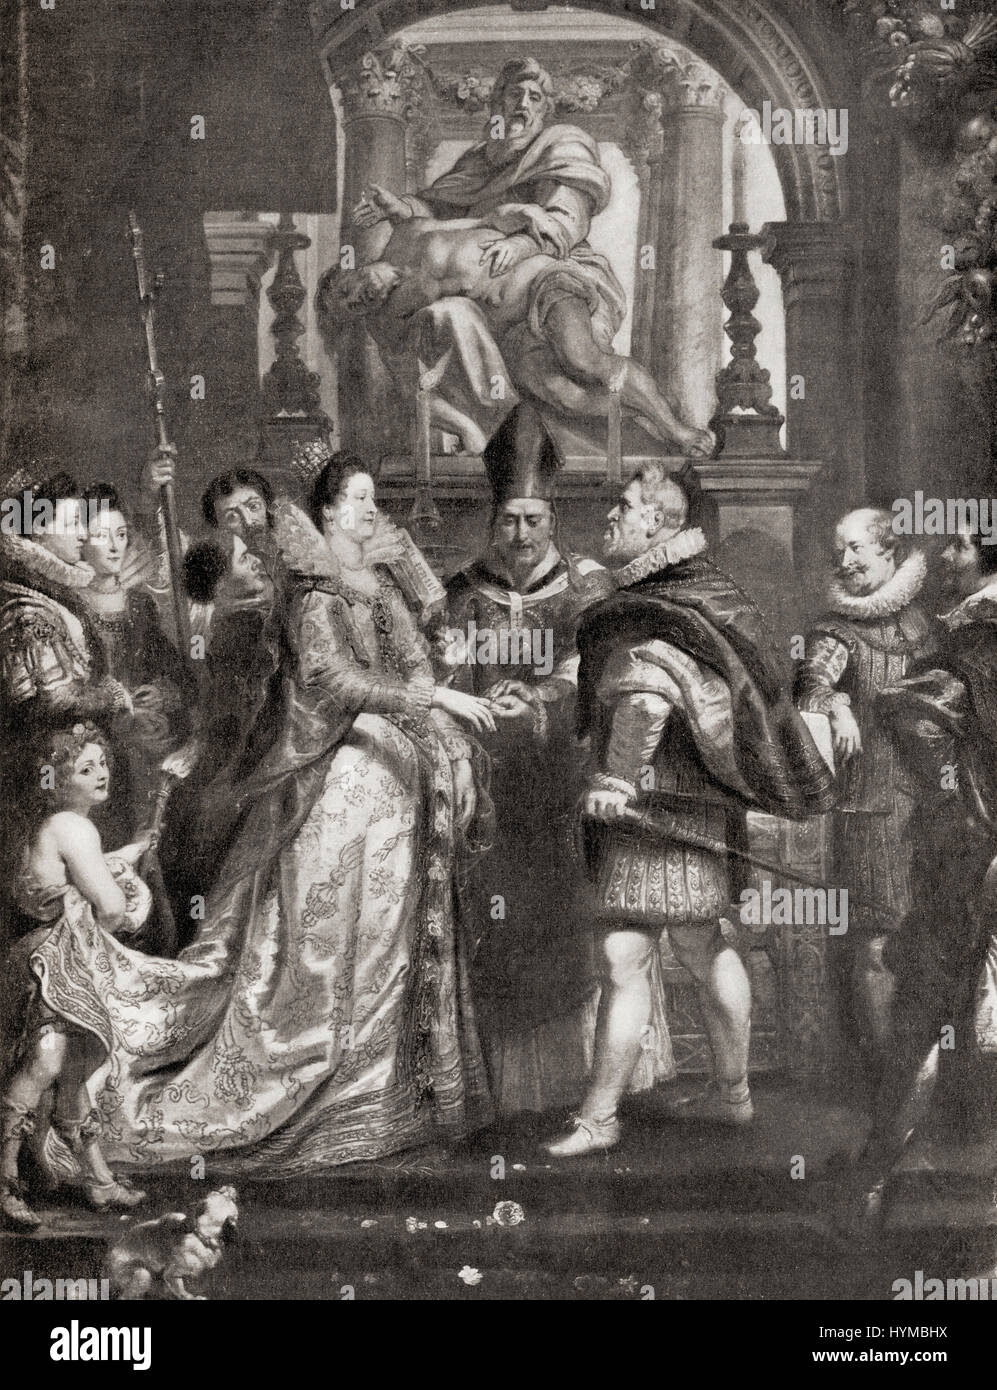 Le mariage par procuration de Marie de Médicis au roi Henri IV, après la peinture de Pierre Paul Rubens. Marie de Médicis, 1575 - 1642. Reine de France comme la deuxième épouse du roi Henri IV de France. L'histoire de Hutchinson de l'ONU, publié en 1915. Banque D'Images